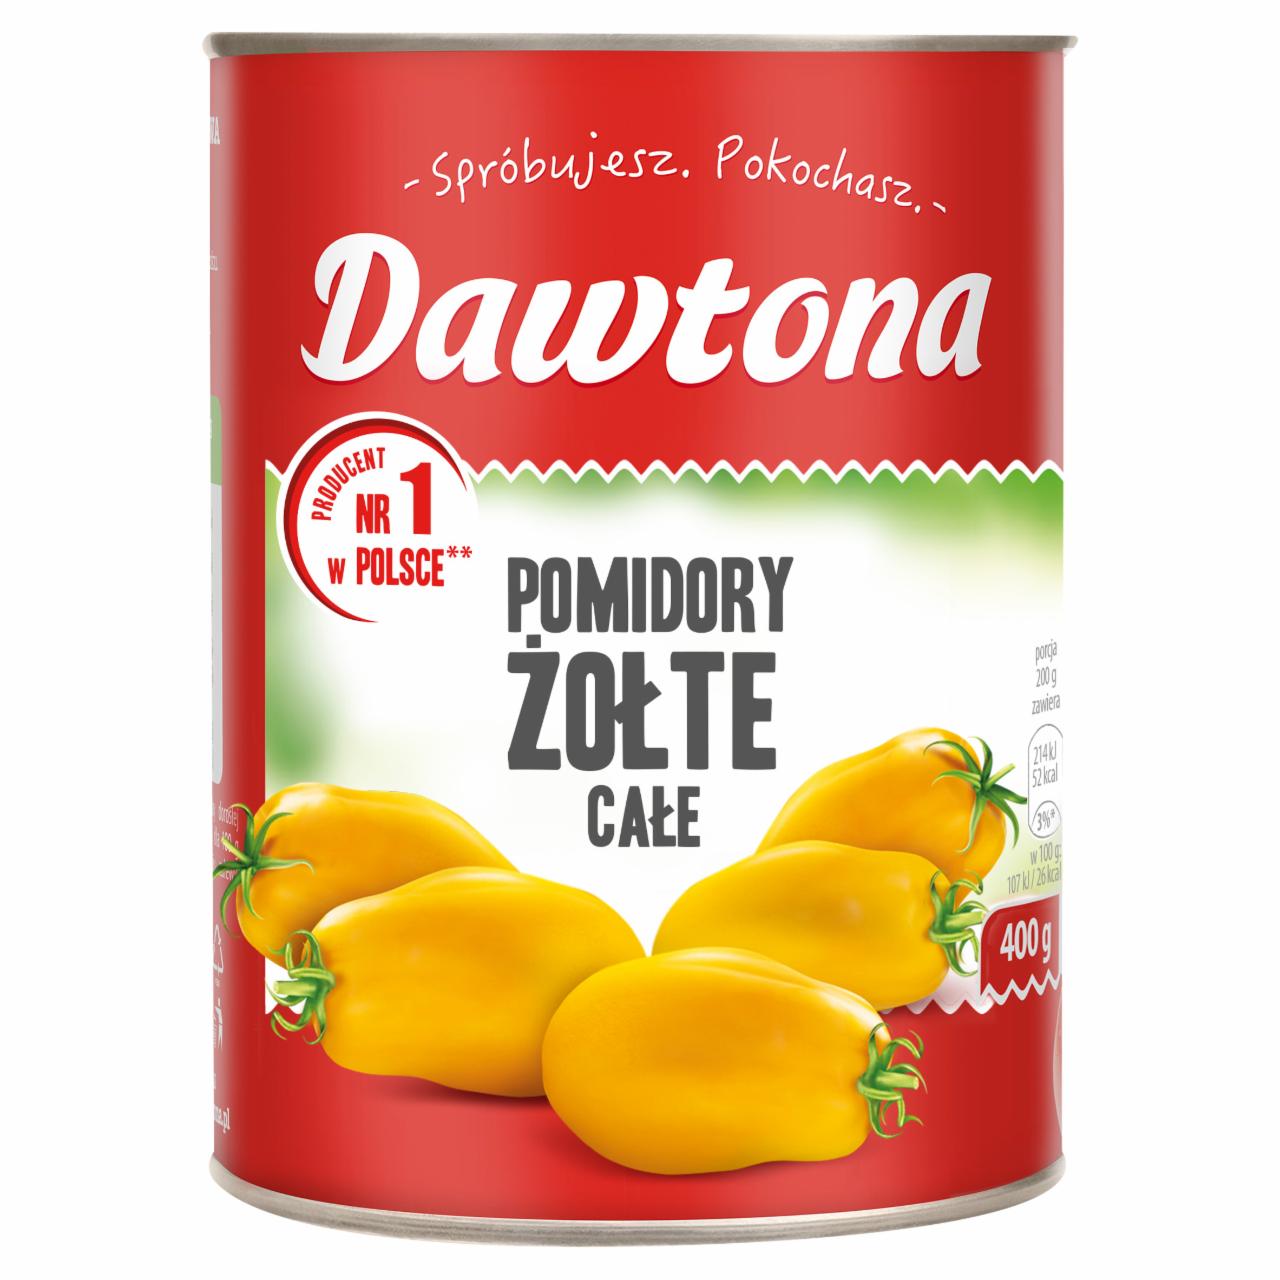 Zdjęcia - Dawtona Pomidory żółte całe 400 g